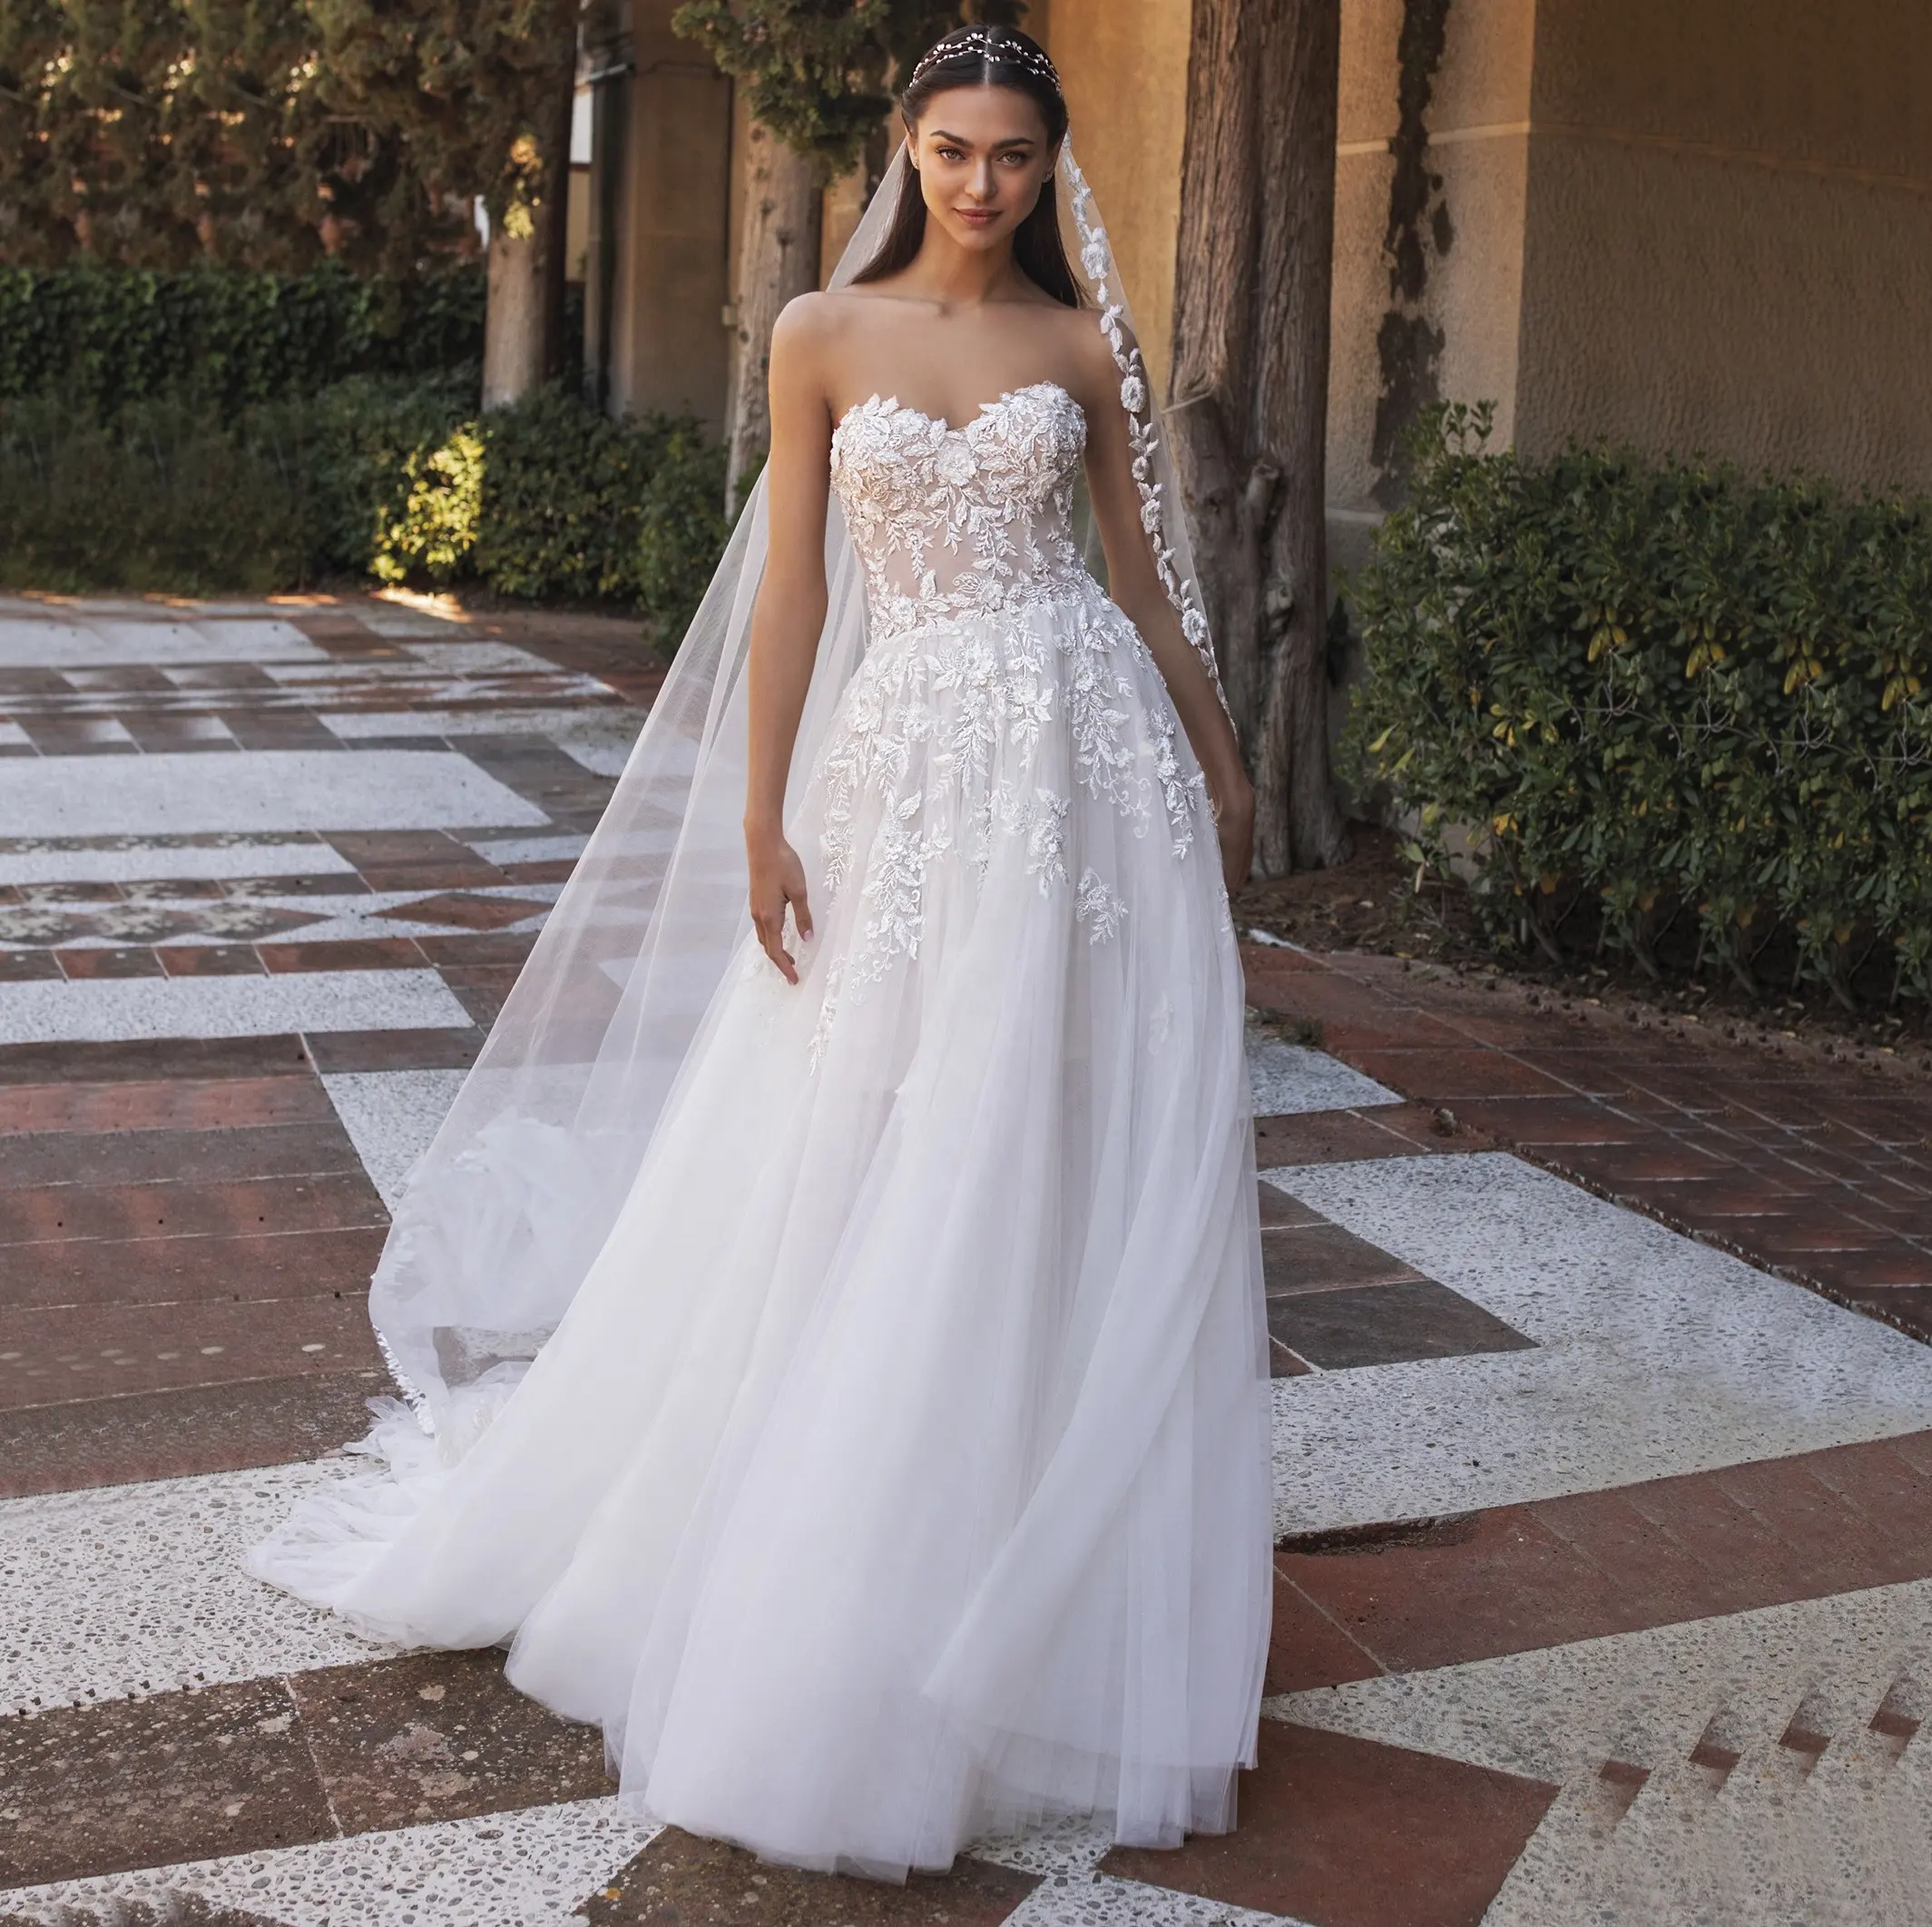 Vestido de casamento boho beach sweetheart 2019 para venda on-line